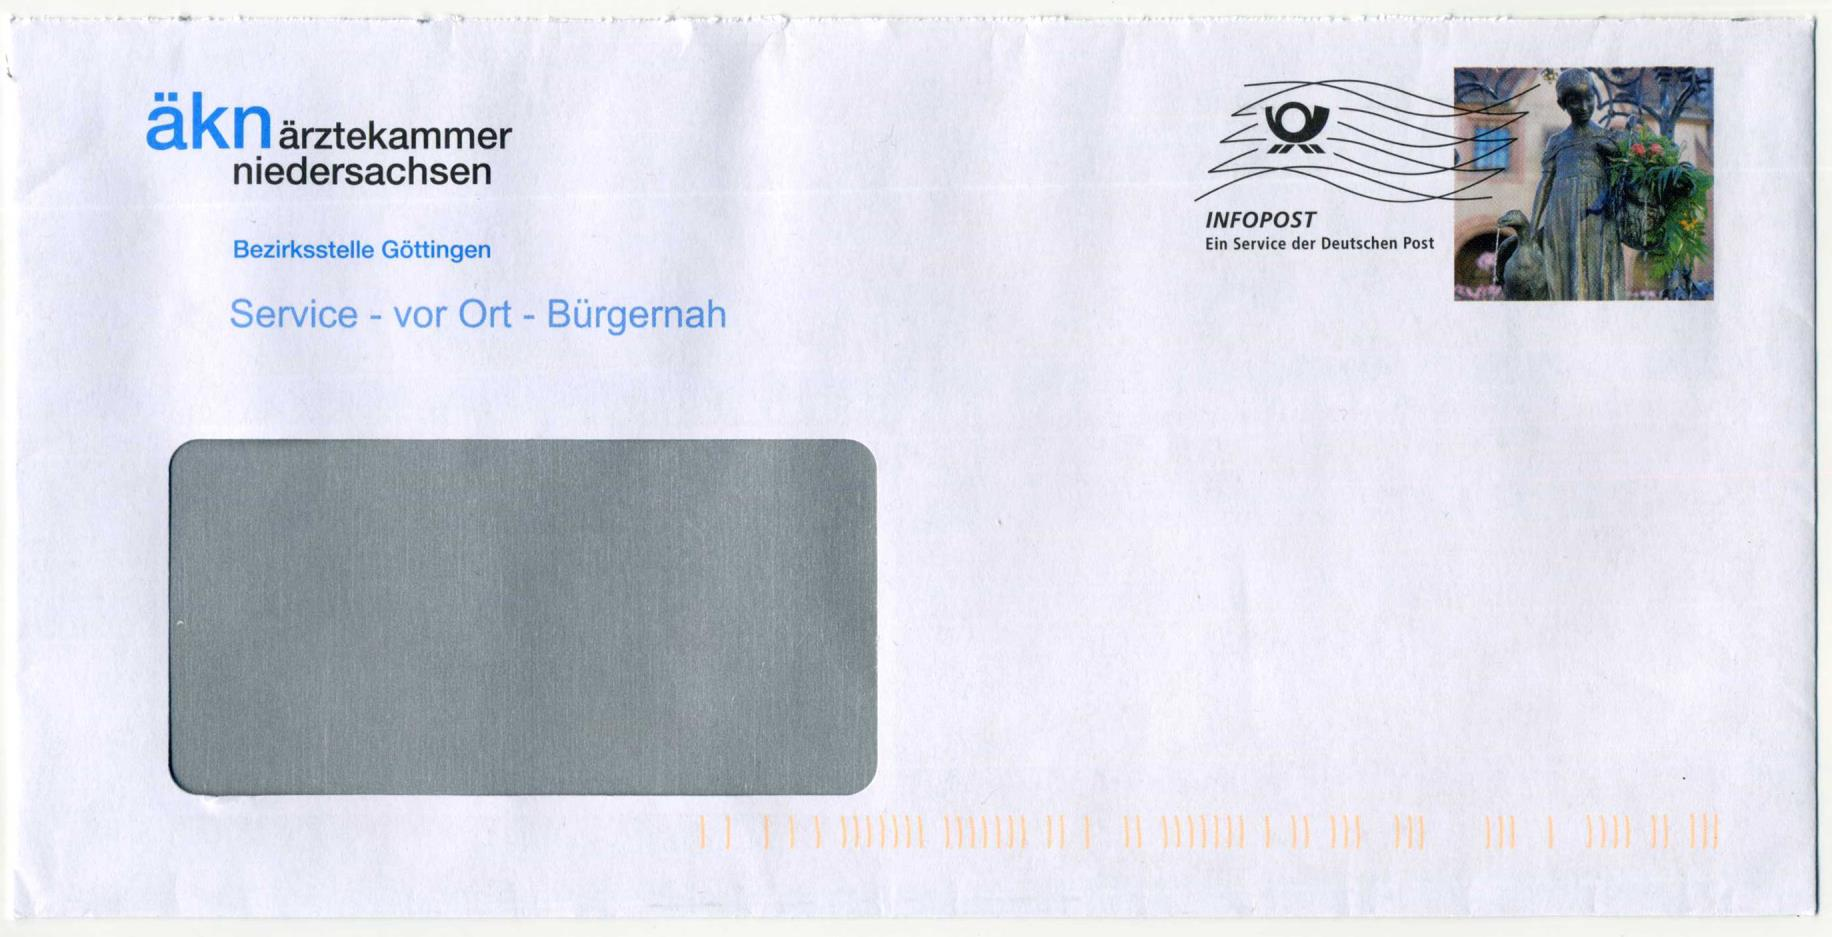 Dieser private Infopost-Umschlag der ÄKN aus dem Jahr 2014 basiert